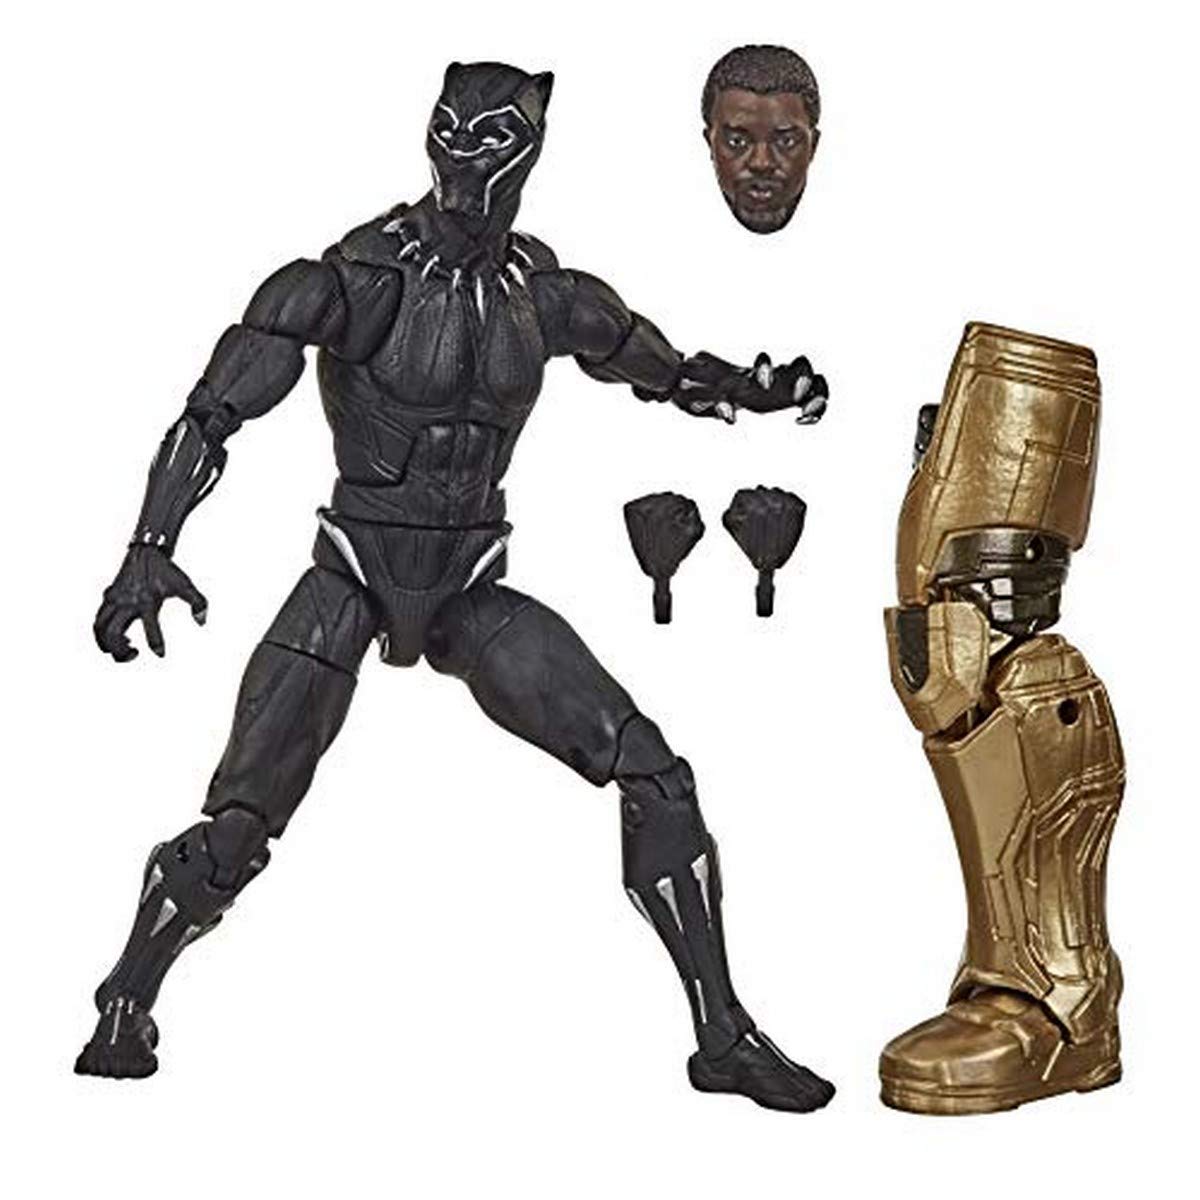 Hasbro Marvel Legends Avengers Endgame Wave : Black Panther